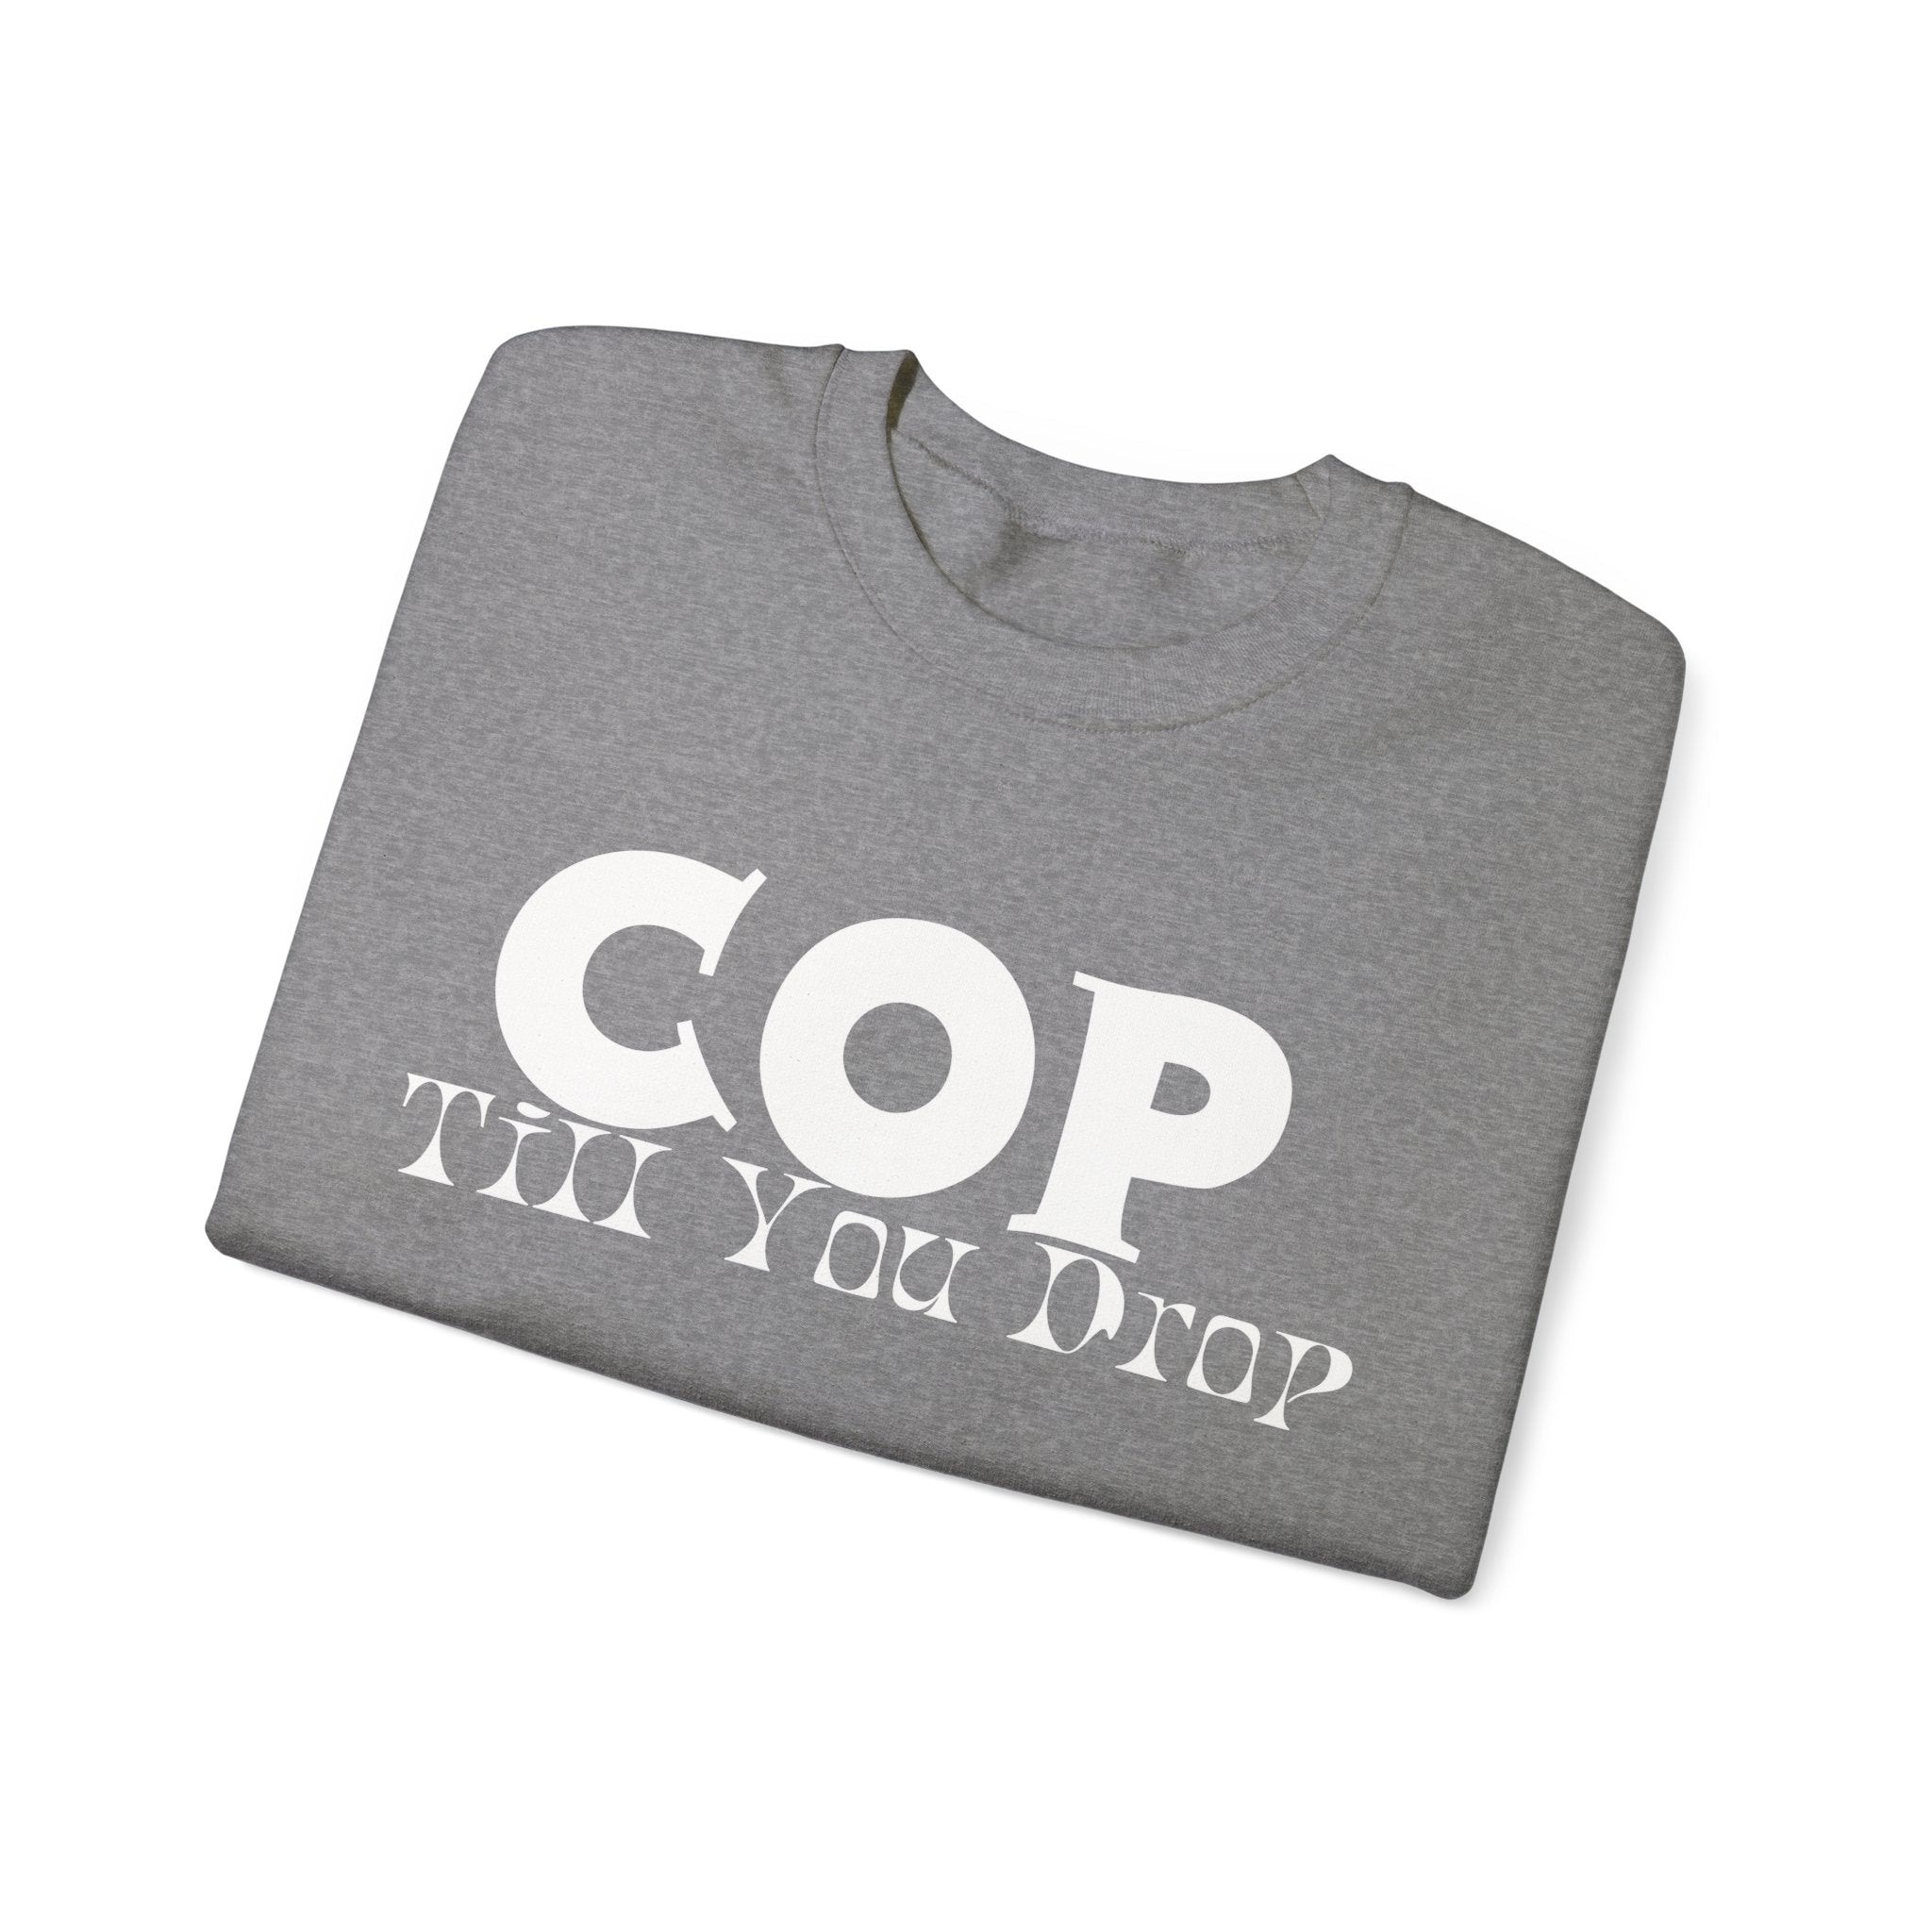 Cop Till You Drop